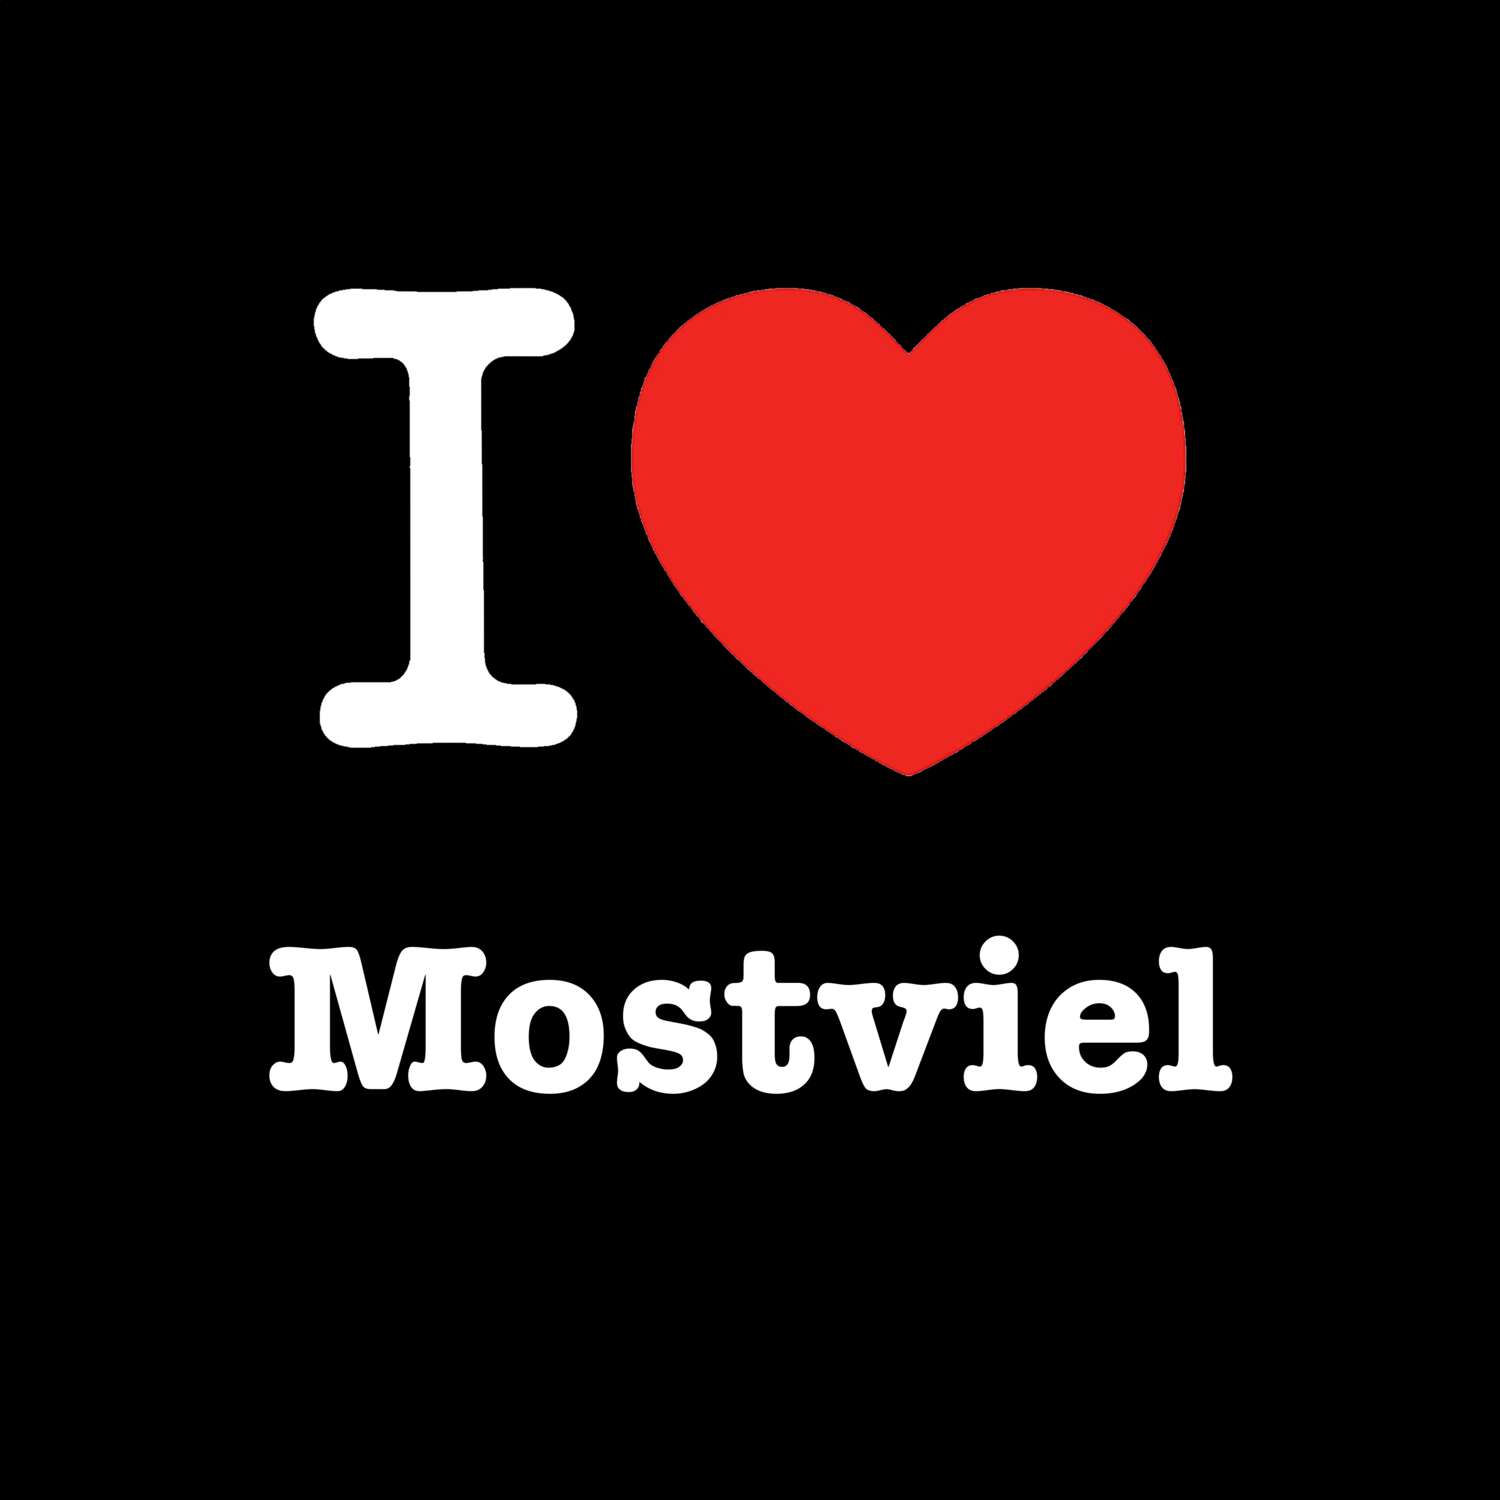 Mostviel T-Shirt »I love«